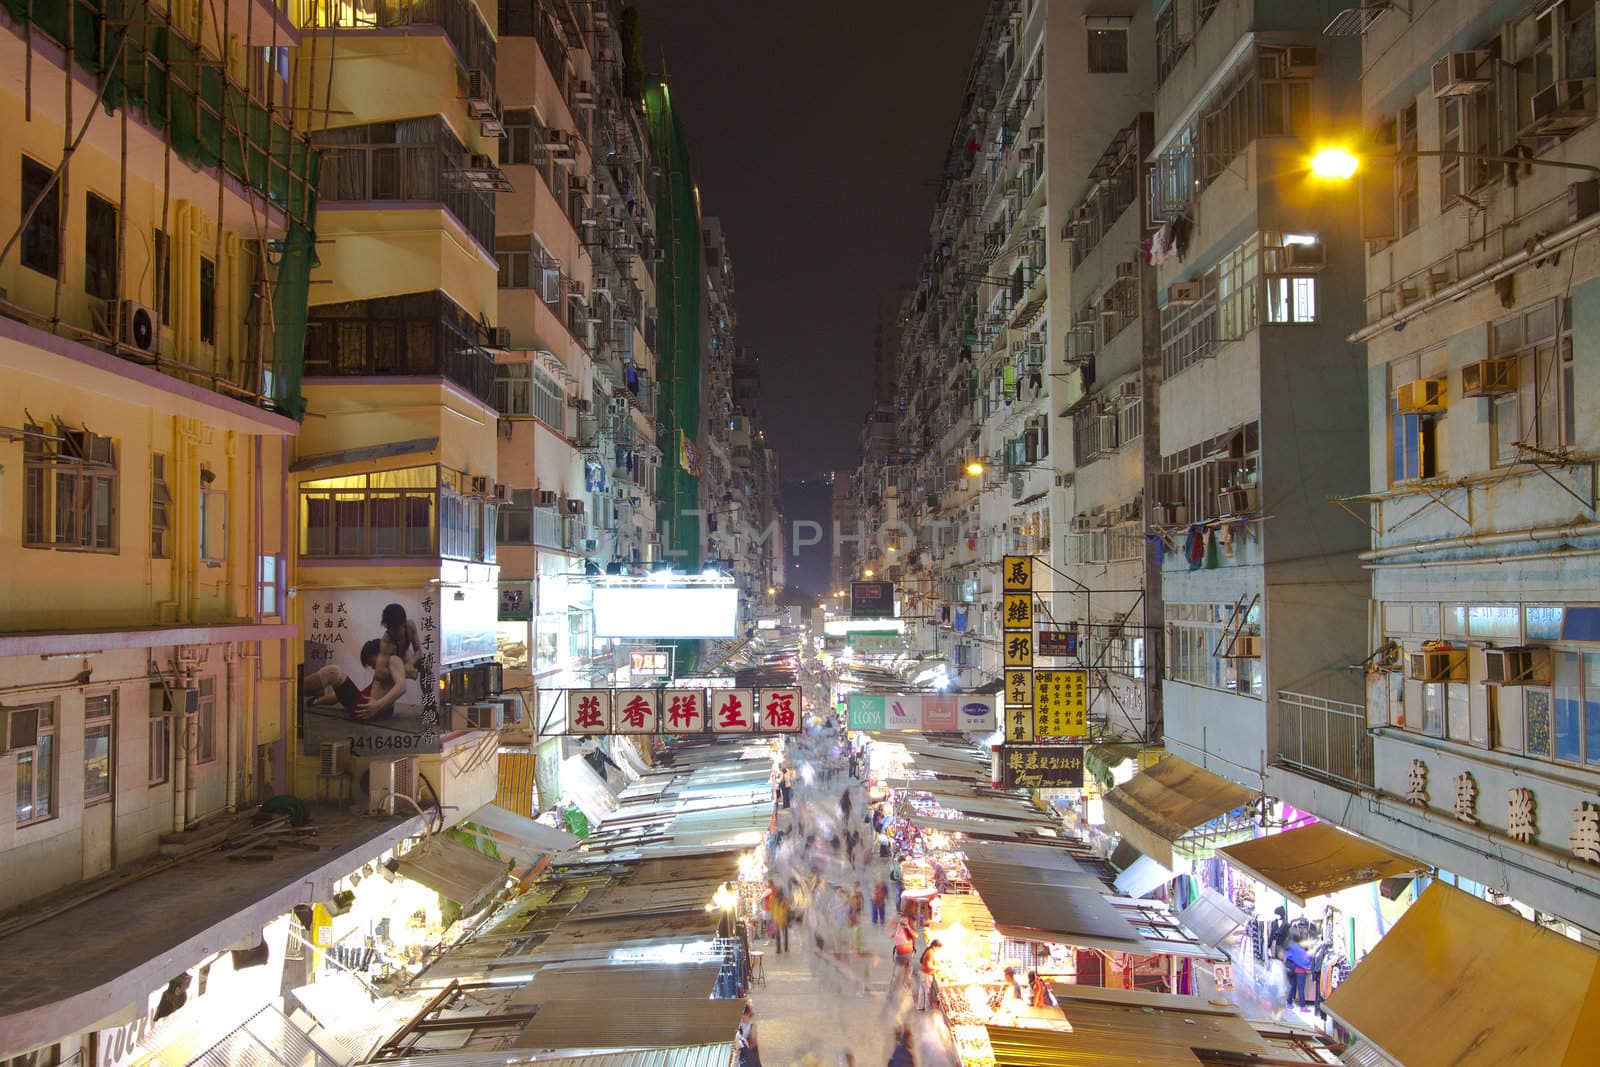 Market in Hong Kong by kawing921